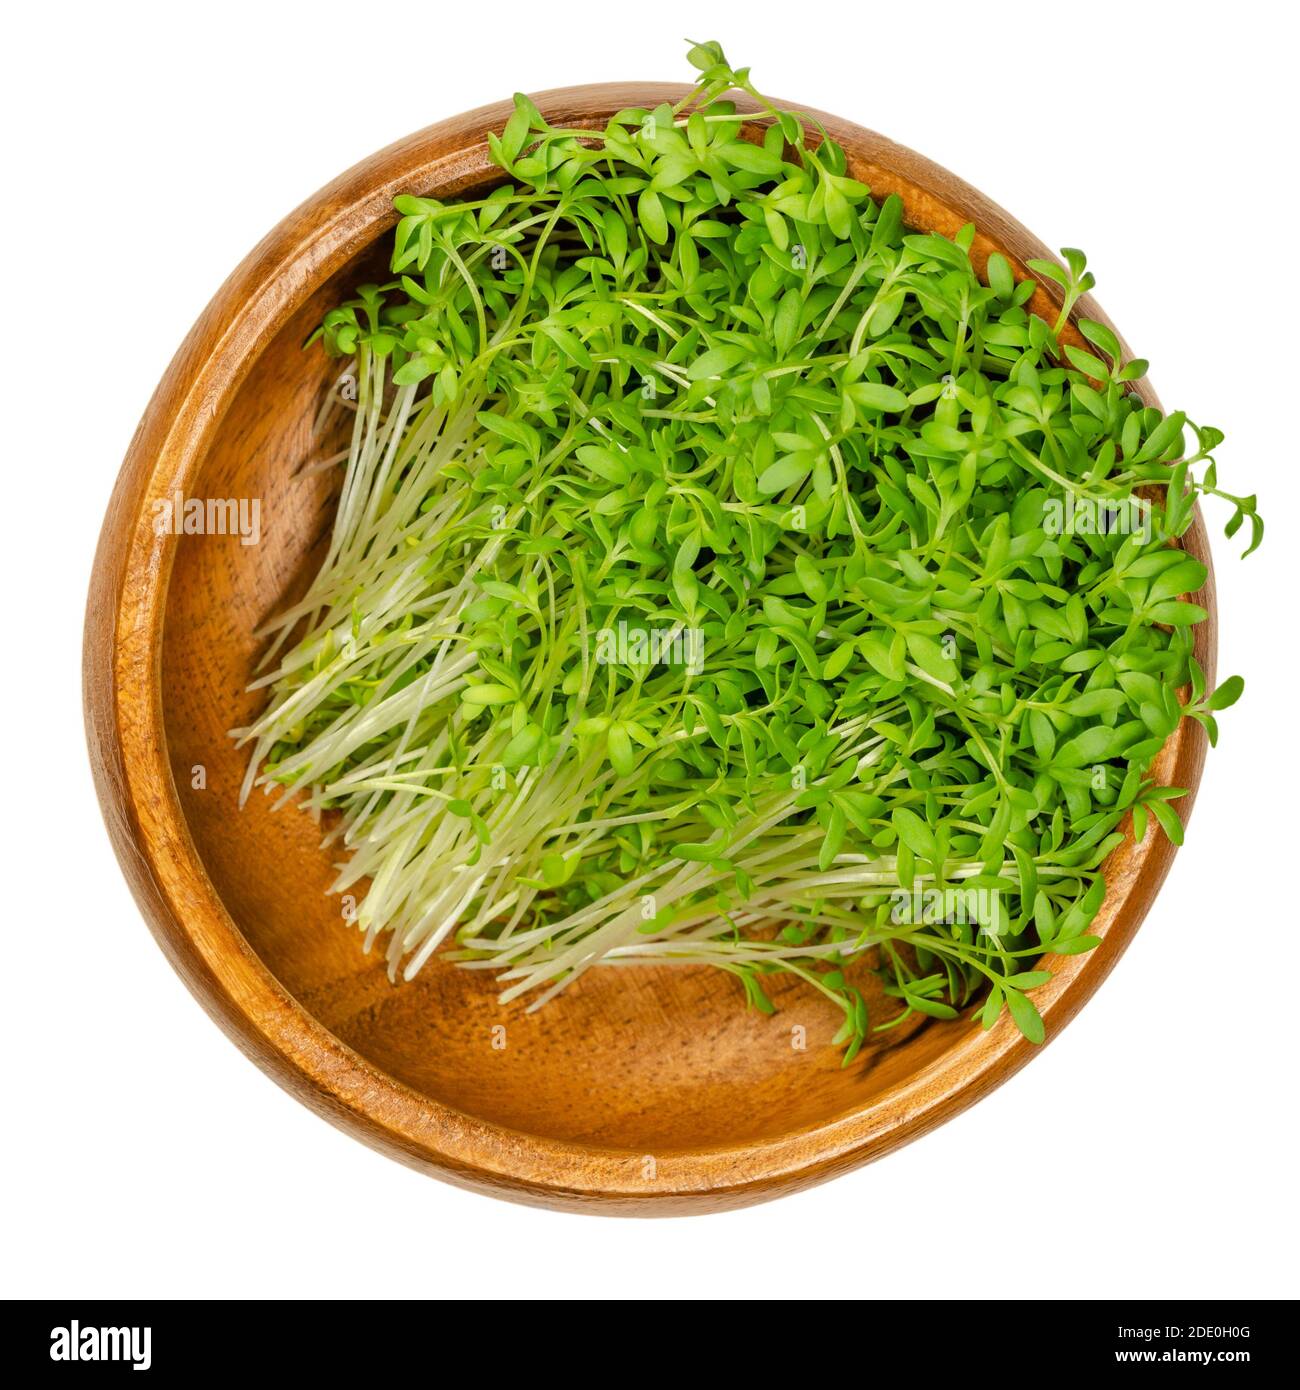 Gartenkresse sprießt in einer Holzschale. Kresse, Pfefferwort oder Pfeffergras. Grüne Sämlinge und Jungpflanzen von Lepidium sativum, einem gesunden Mikrogrün. Stockfoto